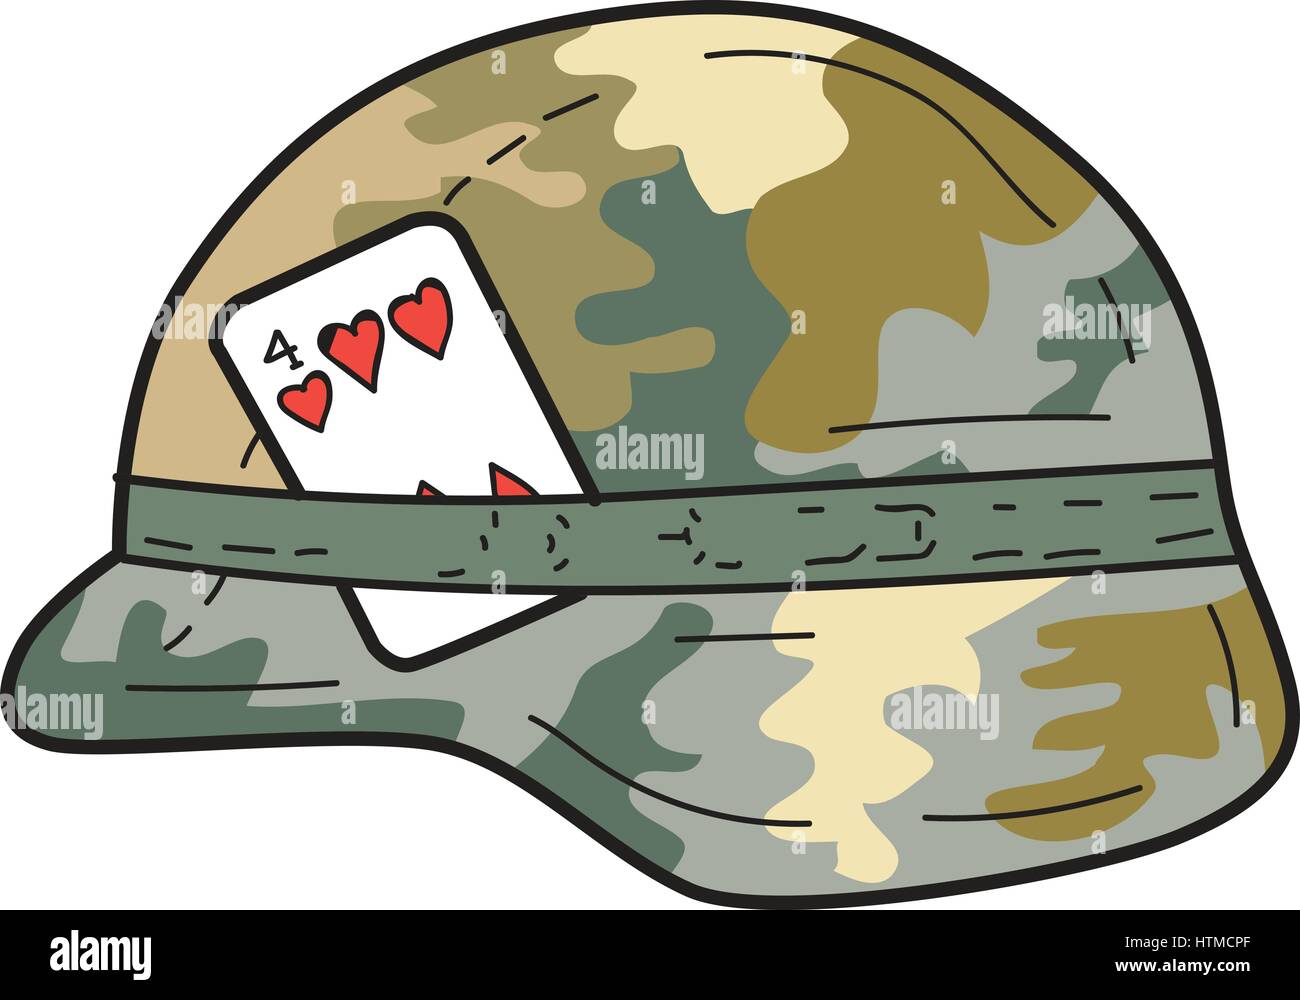 Croquis dessin illustration d'un style Us Army combat Kevlar casque avec couvercle en tissu camouflage et quatre cœurs de carte à jouer ensemble attachés sur le côté o Illustration de Vecteur